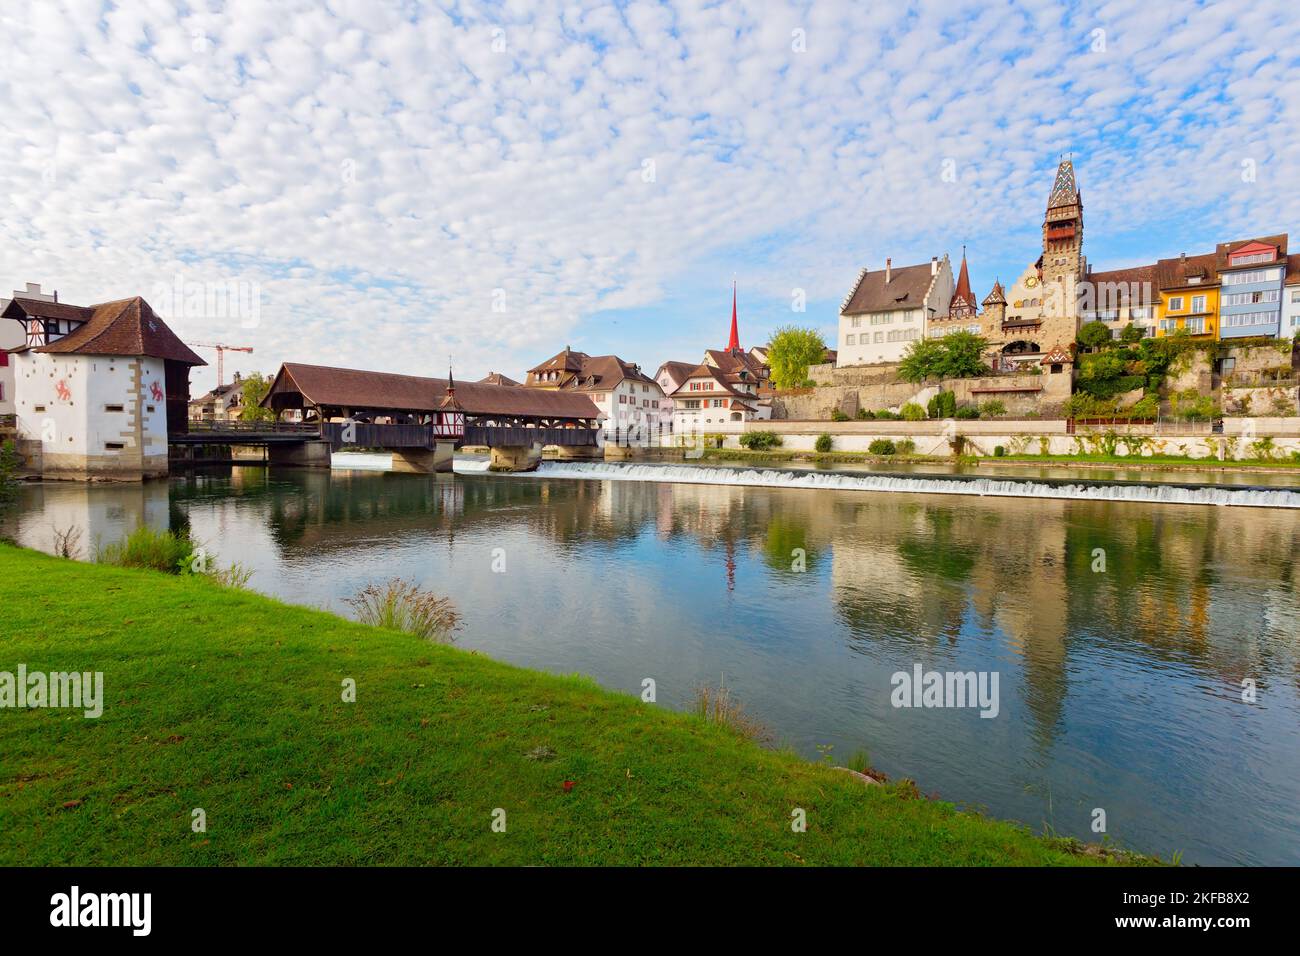 Medieval village Bremgarten near Zurich, Canton Aargau, Switzerland Stock Photo